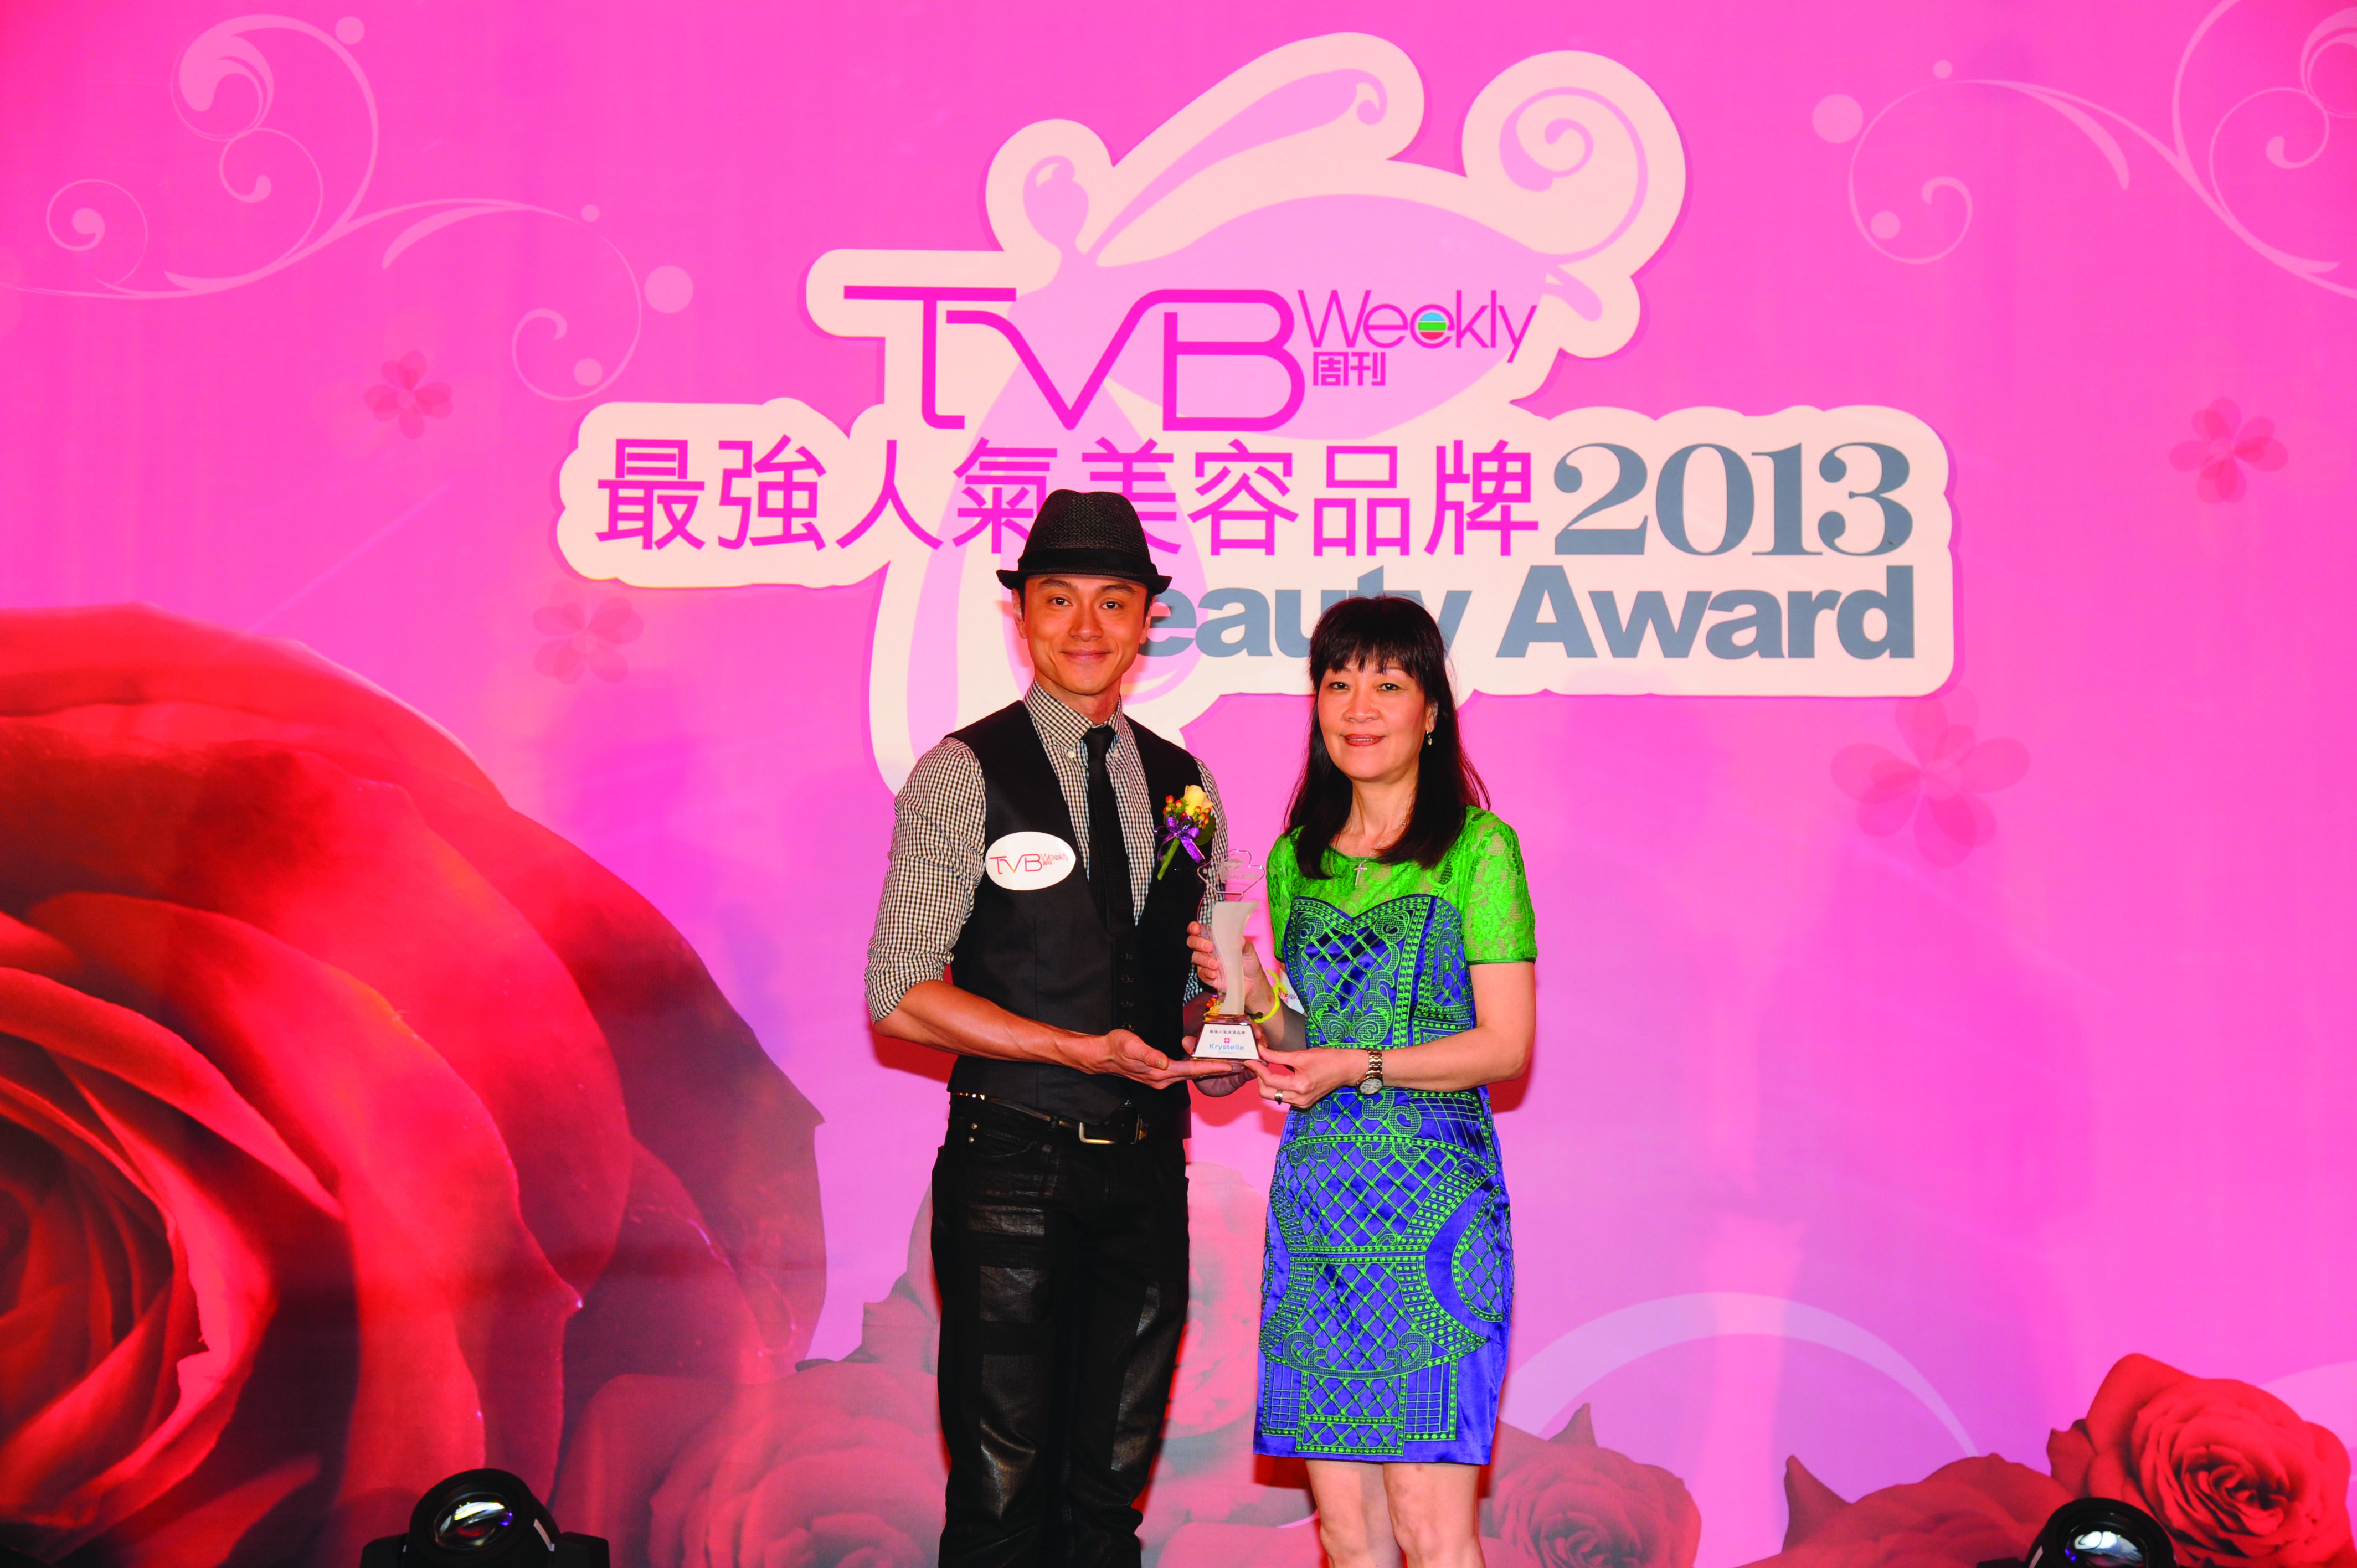 2013年度 TVB周刊 最強人氣保濕品牌 大獎